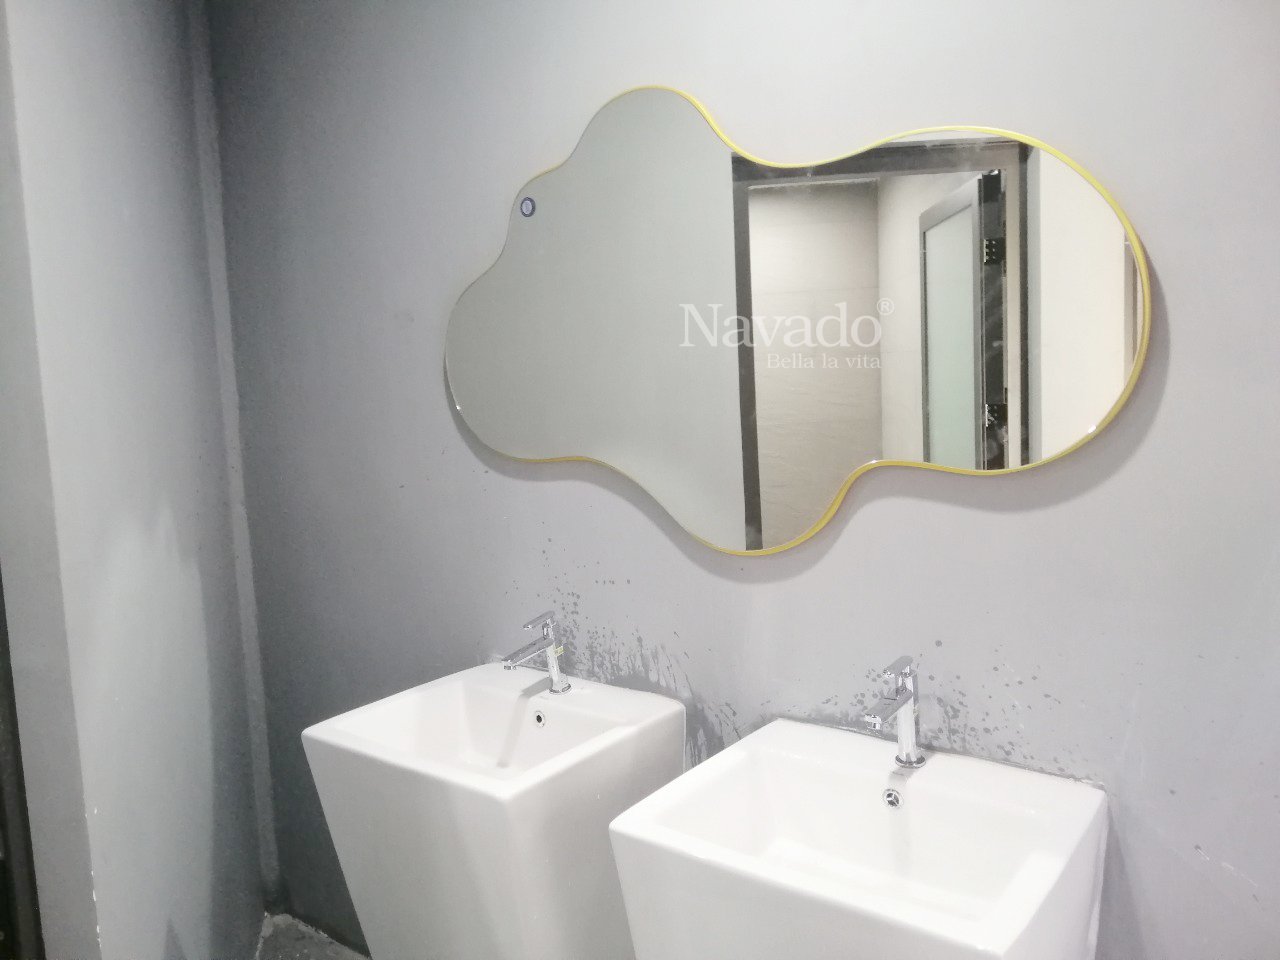 Gương trang trí phòng tắm quận 3 - Gương phòng tắm quận 4 decor phong cách vintage tối giản: Phong cách vintage tối giản đang được ưa chuộng trong năm